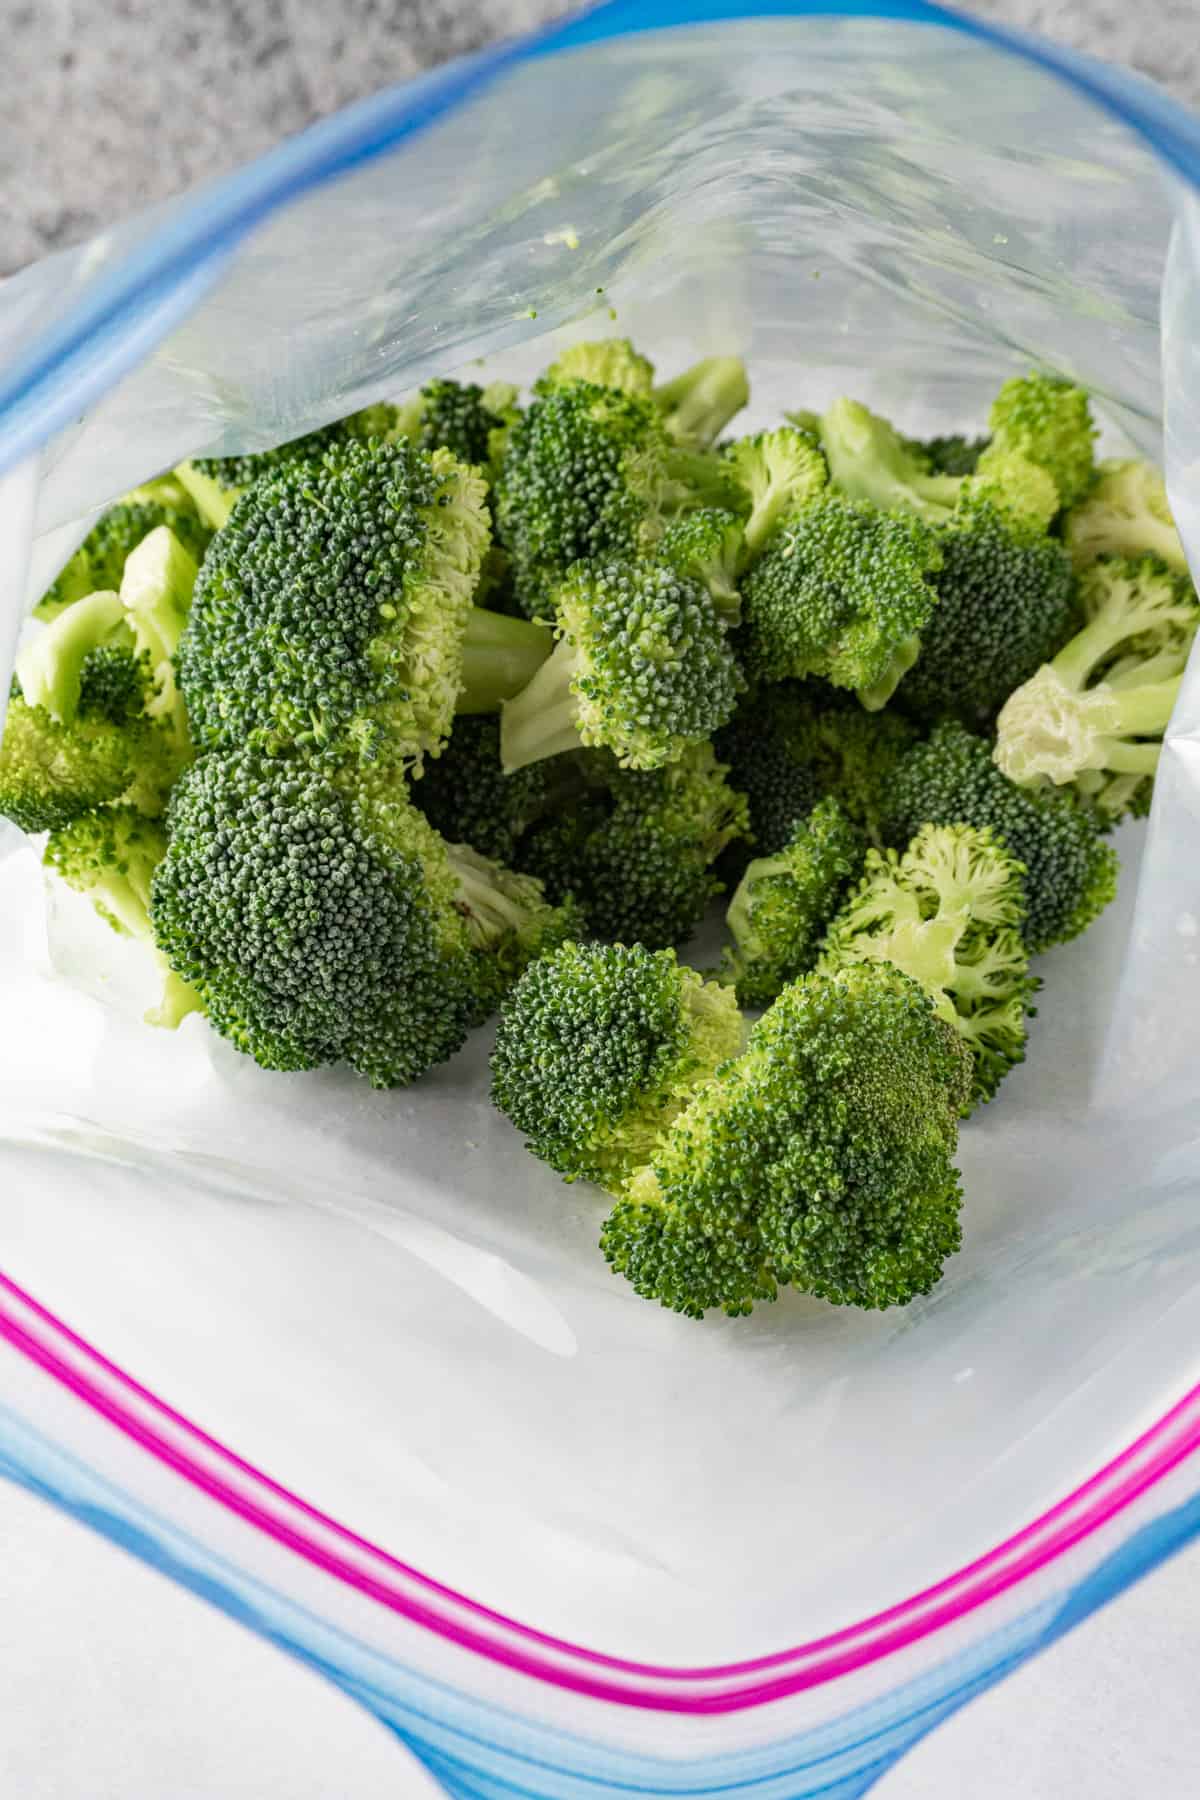 broccoli in ziploc bag